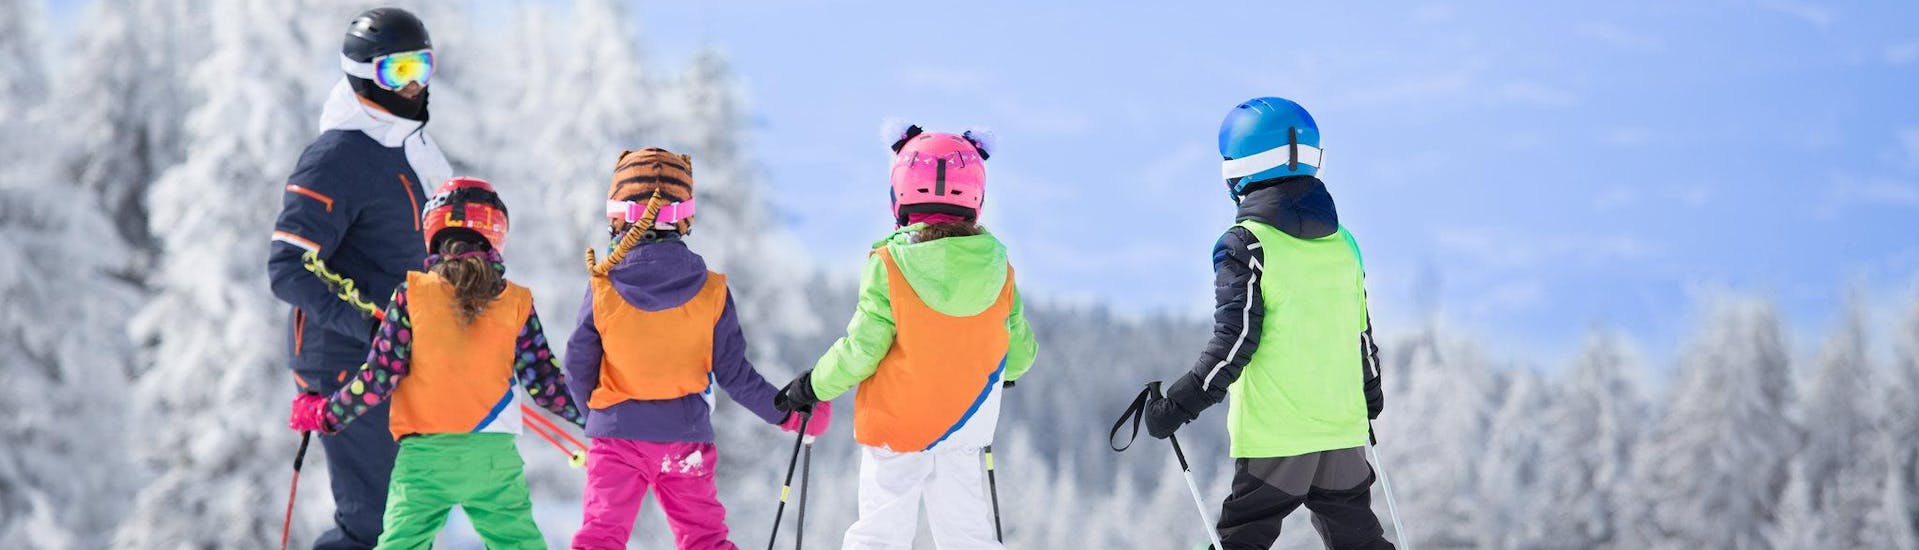 Drie skiërs bereiden zich voor op een skiles met een Engelstalige skileraar in het skigebied van Grenoble.